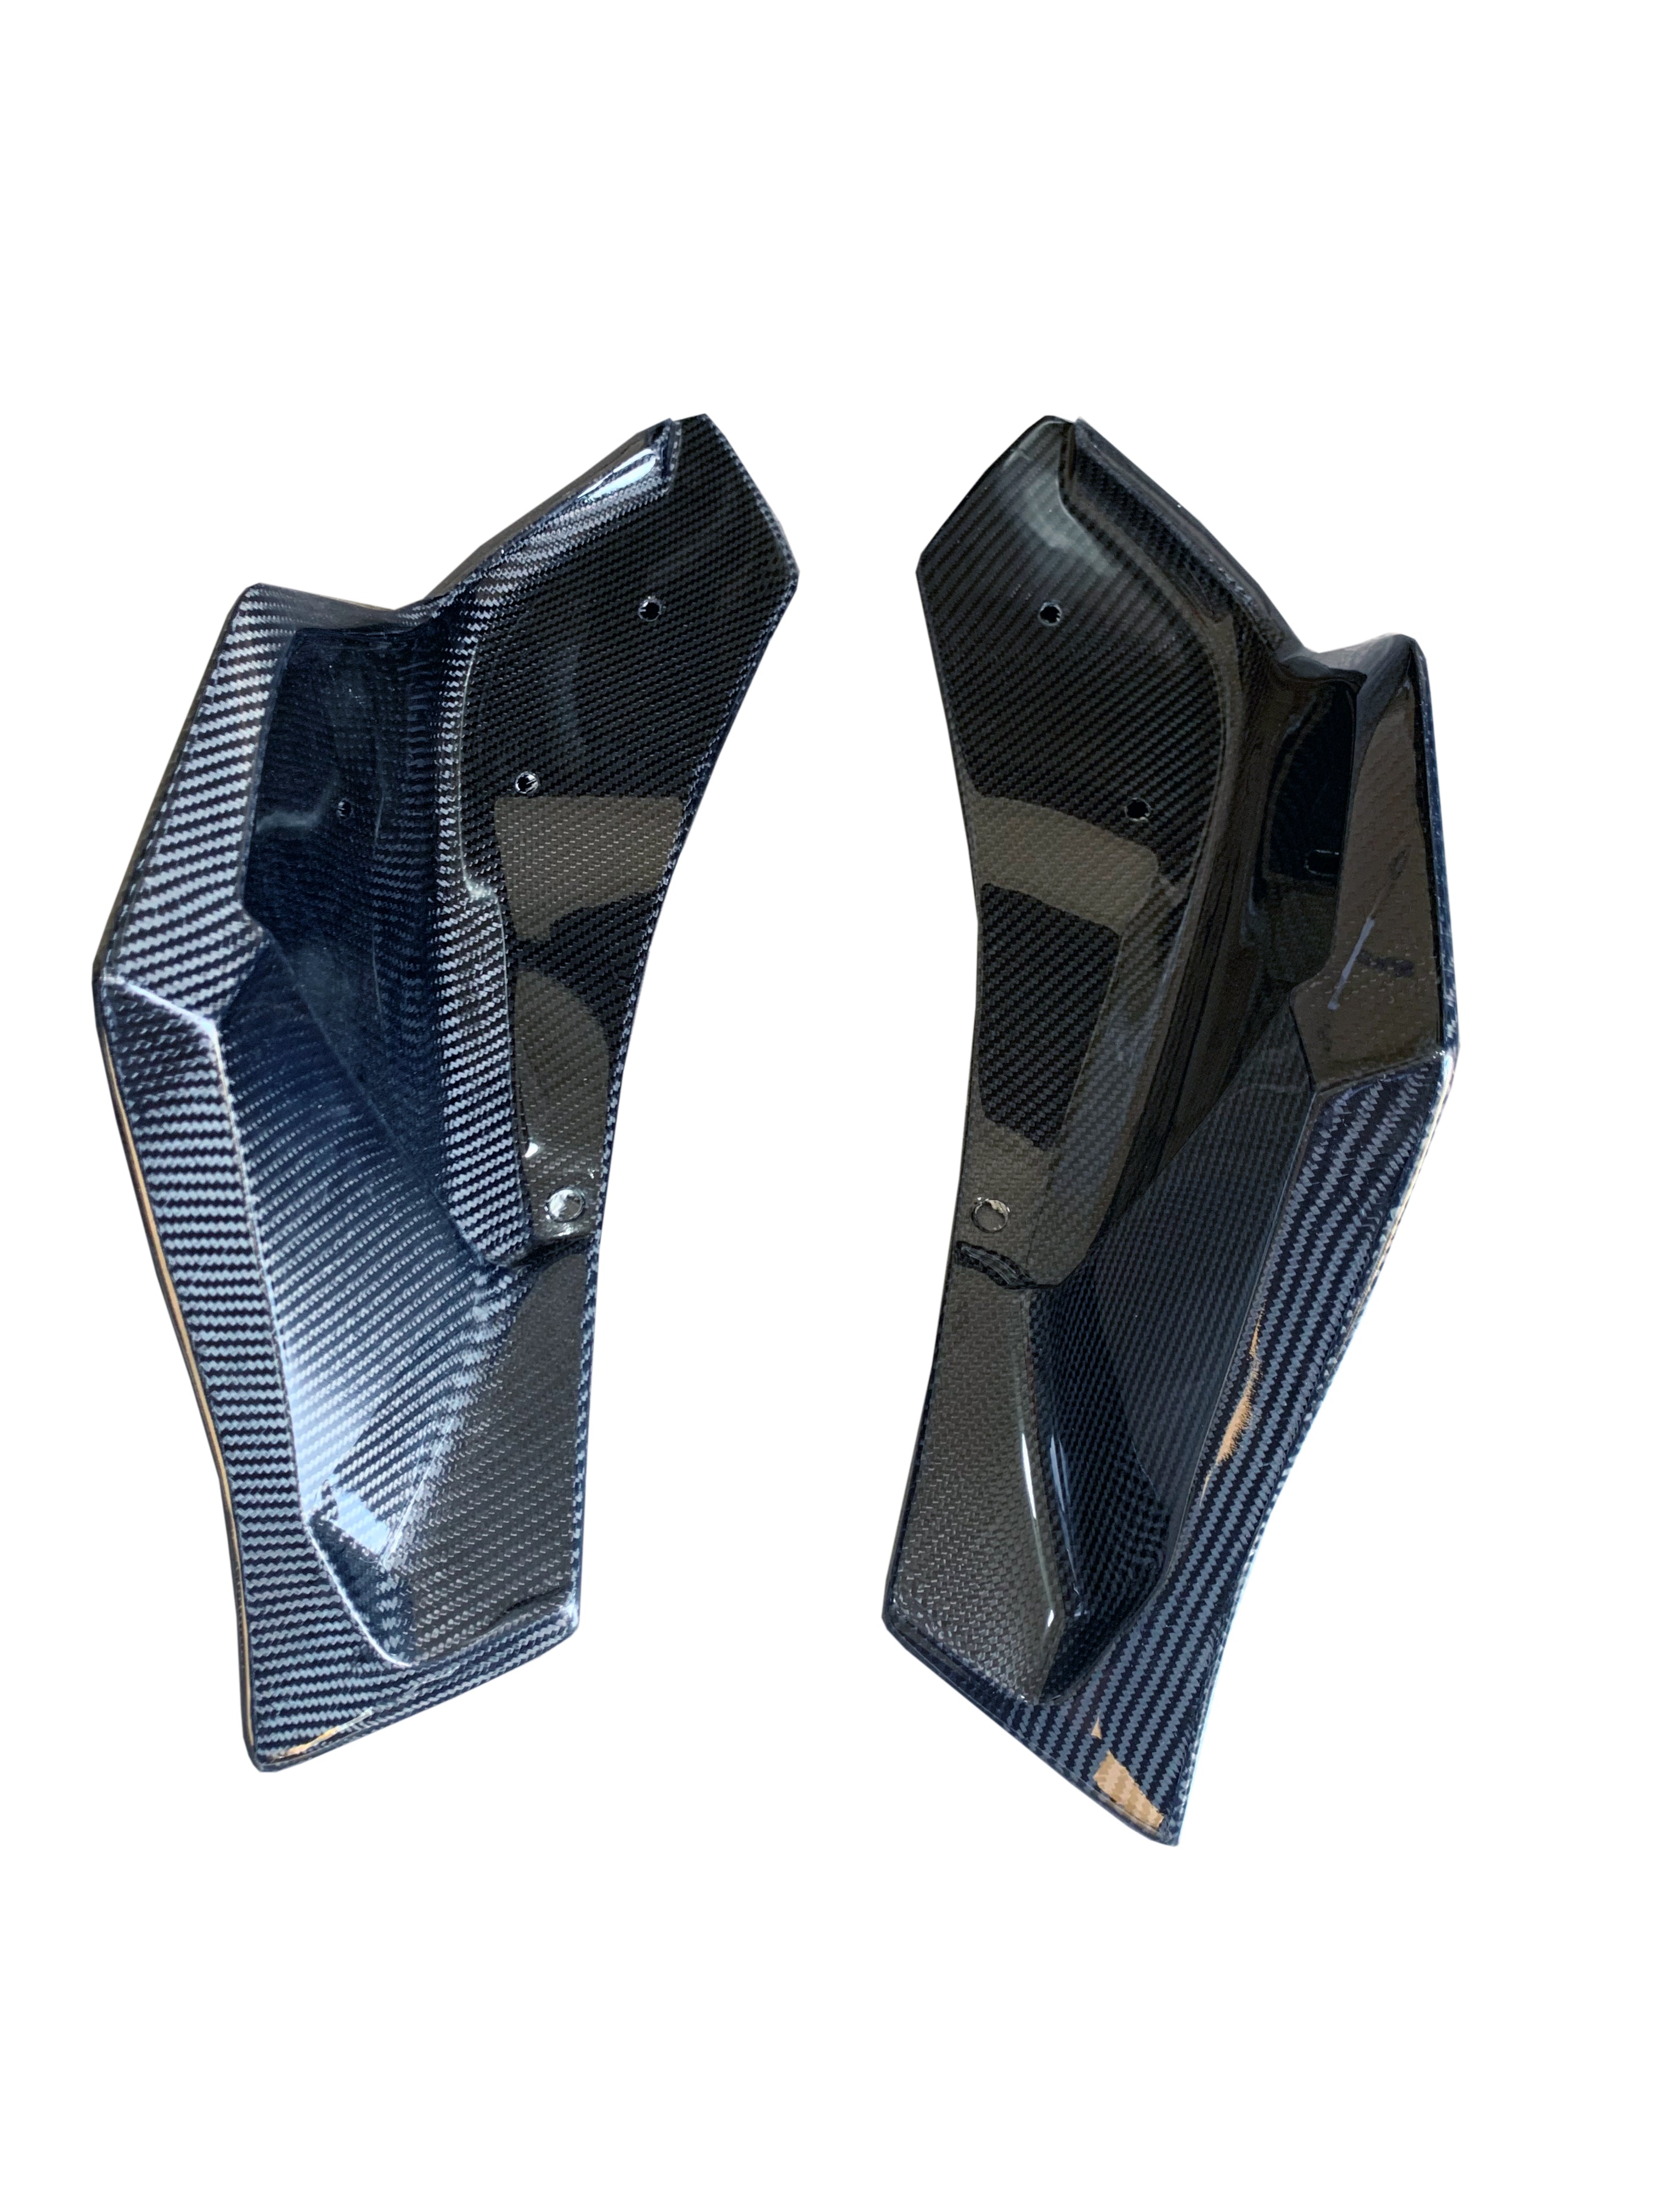 Spats laterales del parachoques trasero de fibra de carbono Rexpeed V3 (MK5 Supra)